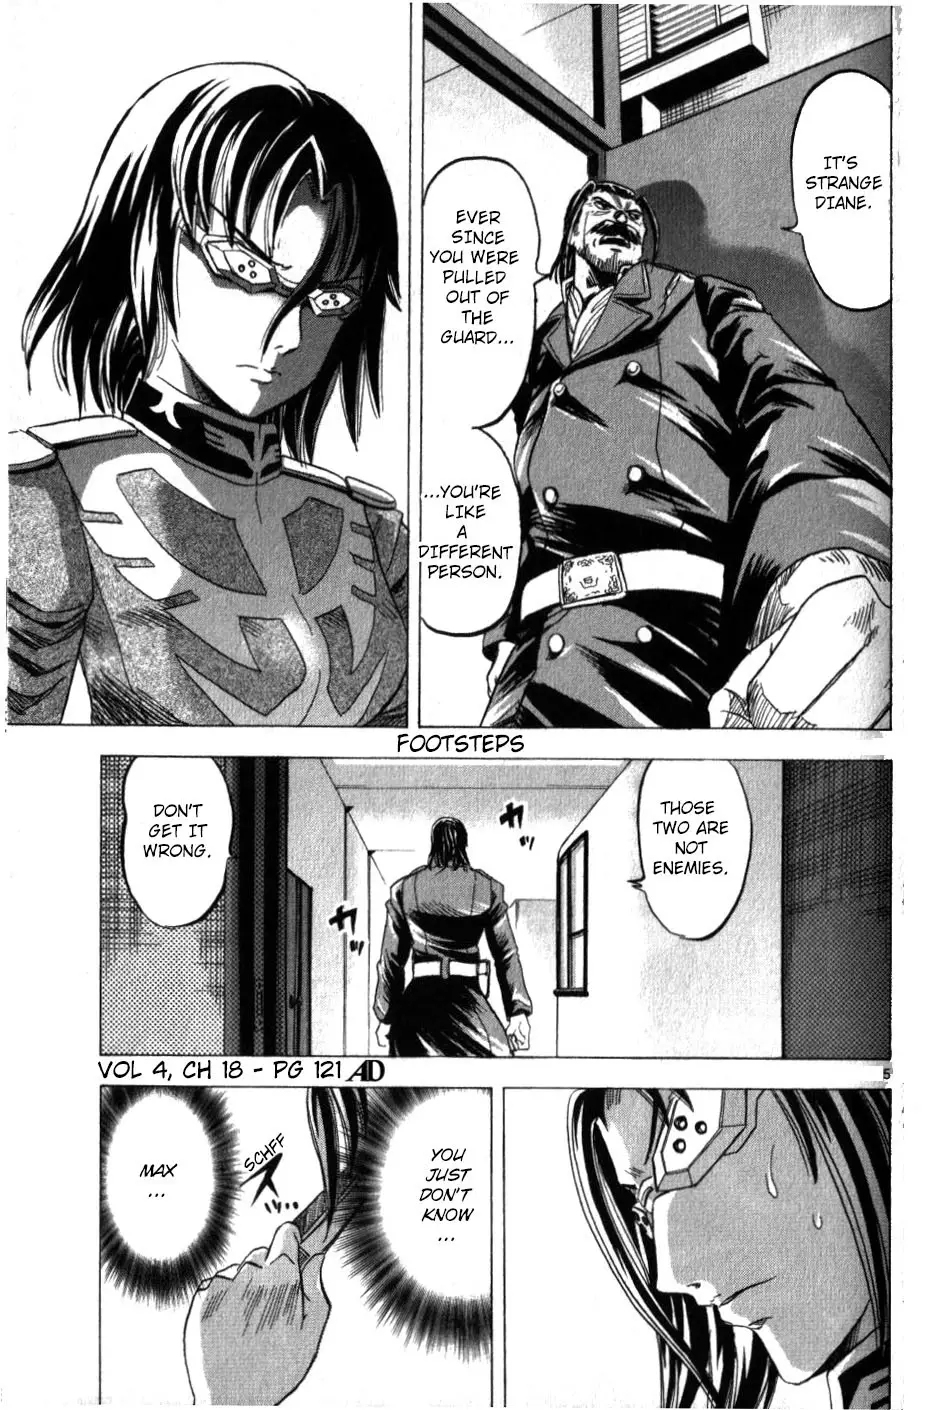 Mobile Suit Gundam Aggressor - 18 page 4-6c6a191d